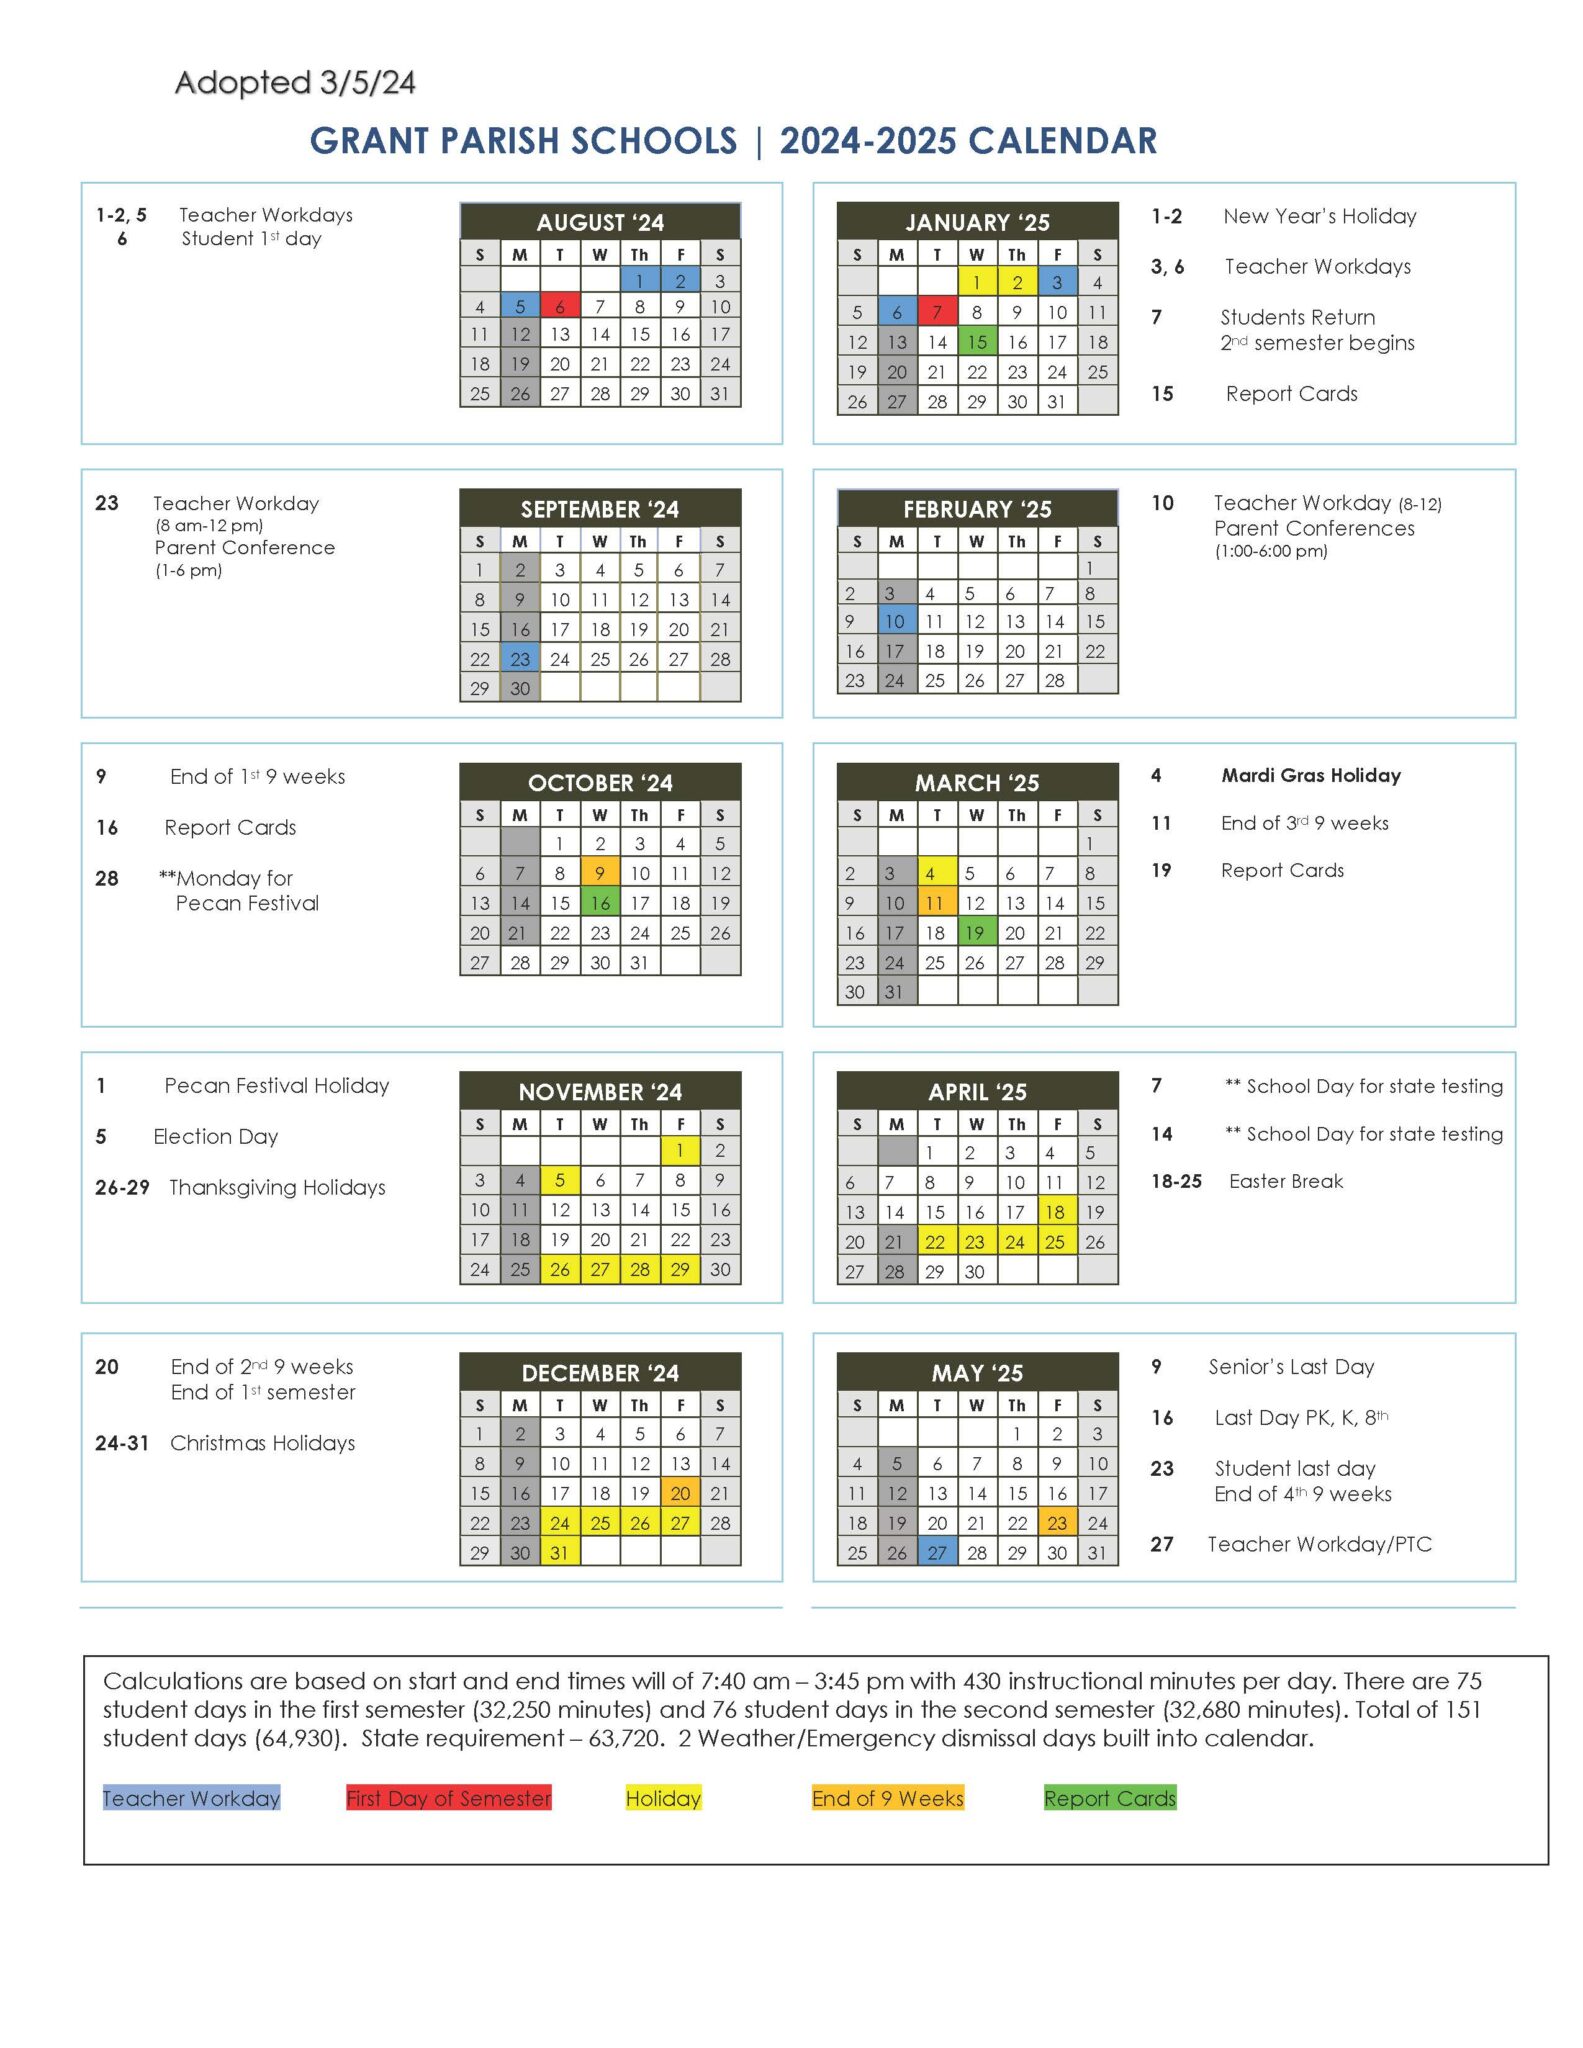 24-25 GPSB Calendar adopted 03 05 24